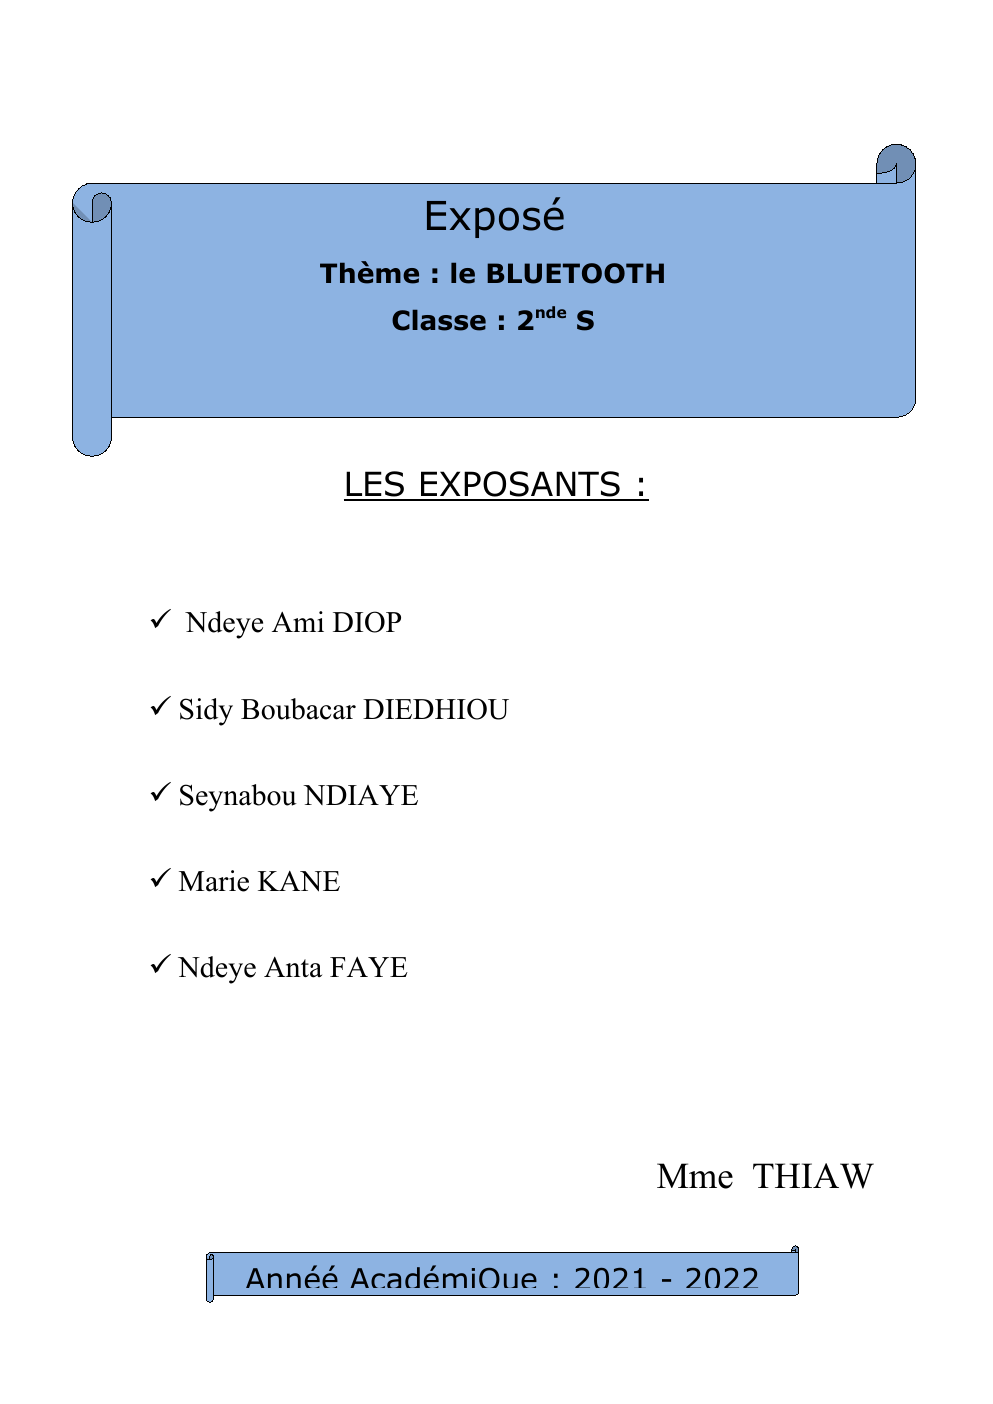 Prévisualisation du document exposé sur le bluetooth